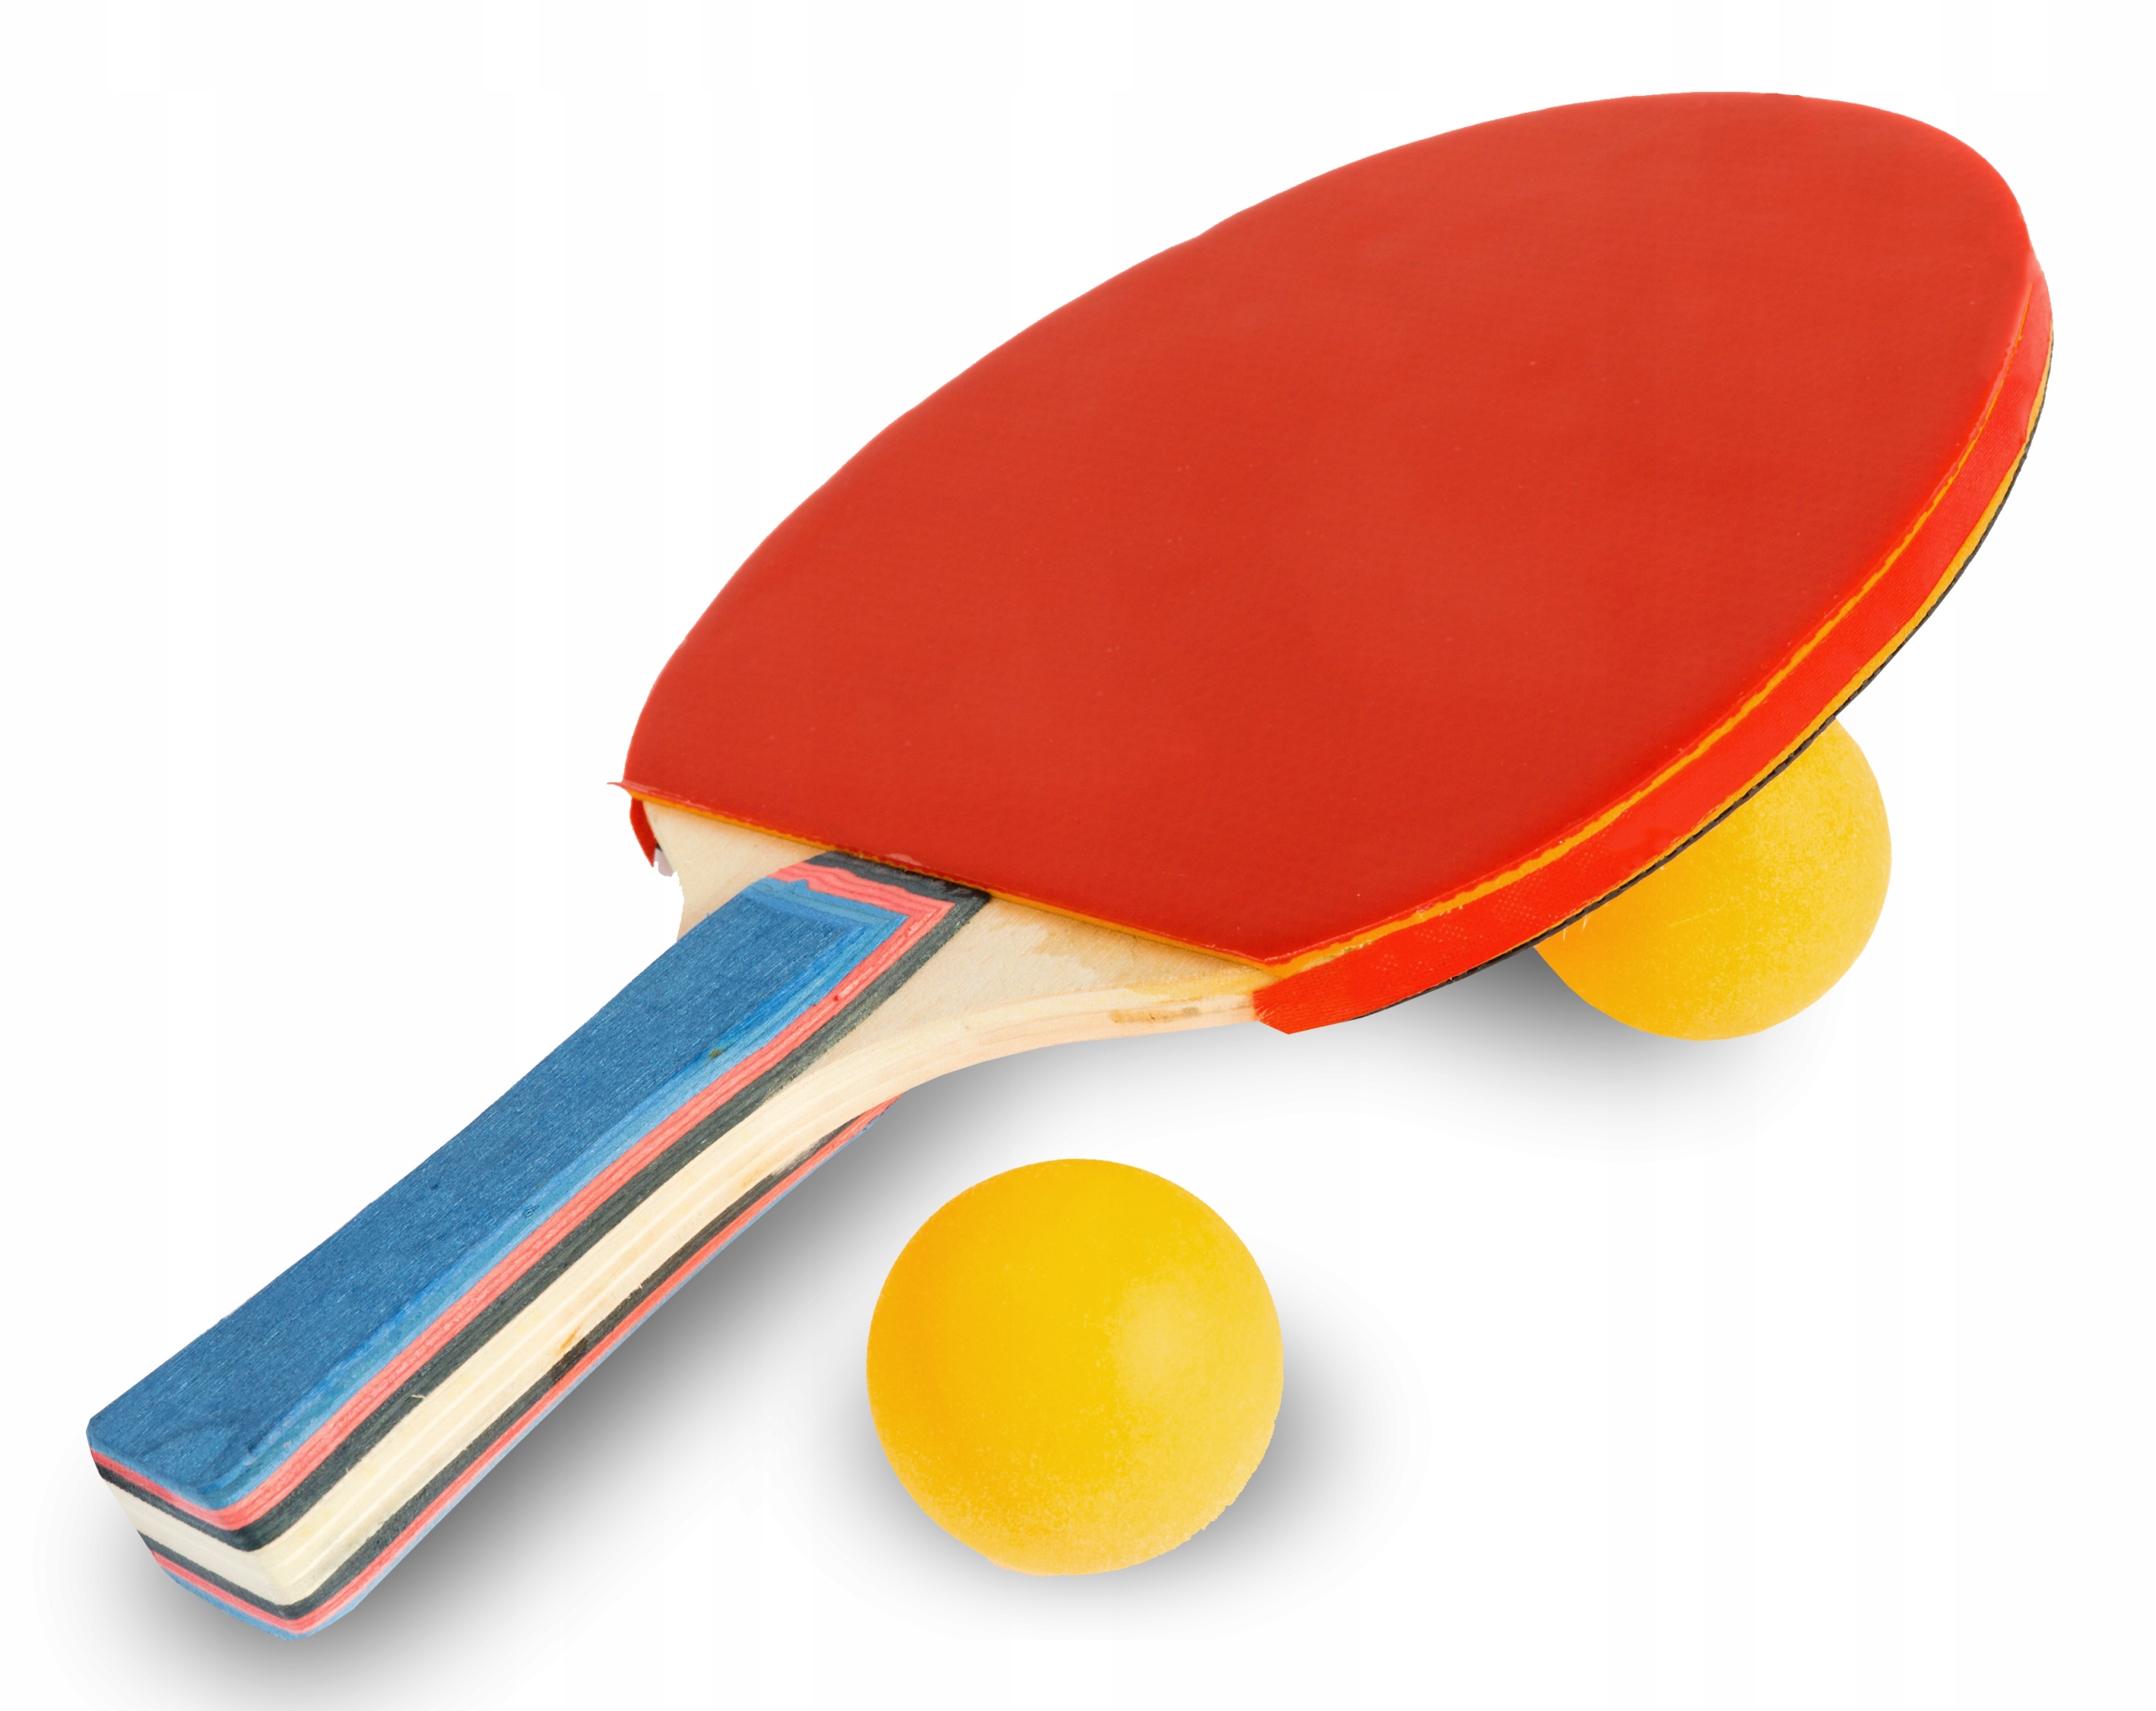 3 мяч для настольного тенниса. Deex настольный теннис 2 ракетки мячик. Darvish / настольный теннис (2 ракетки + 4 мяча). Stiga мячи для настольного тенниса. Ракетка для пинг понга вектор.